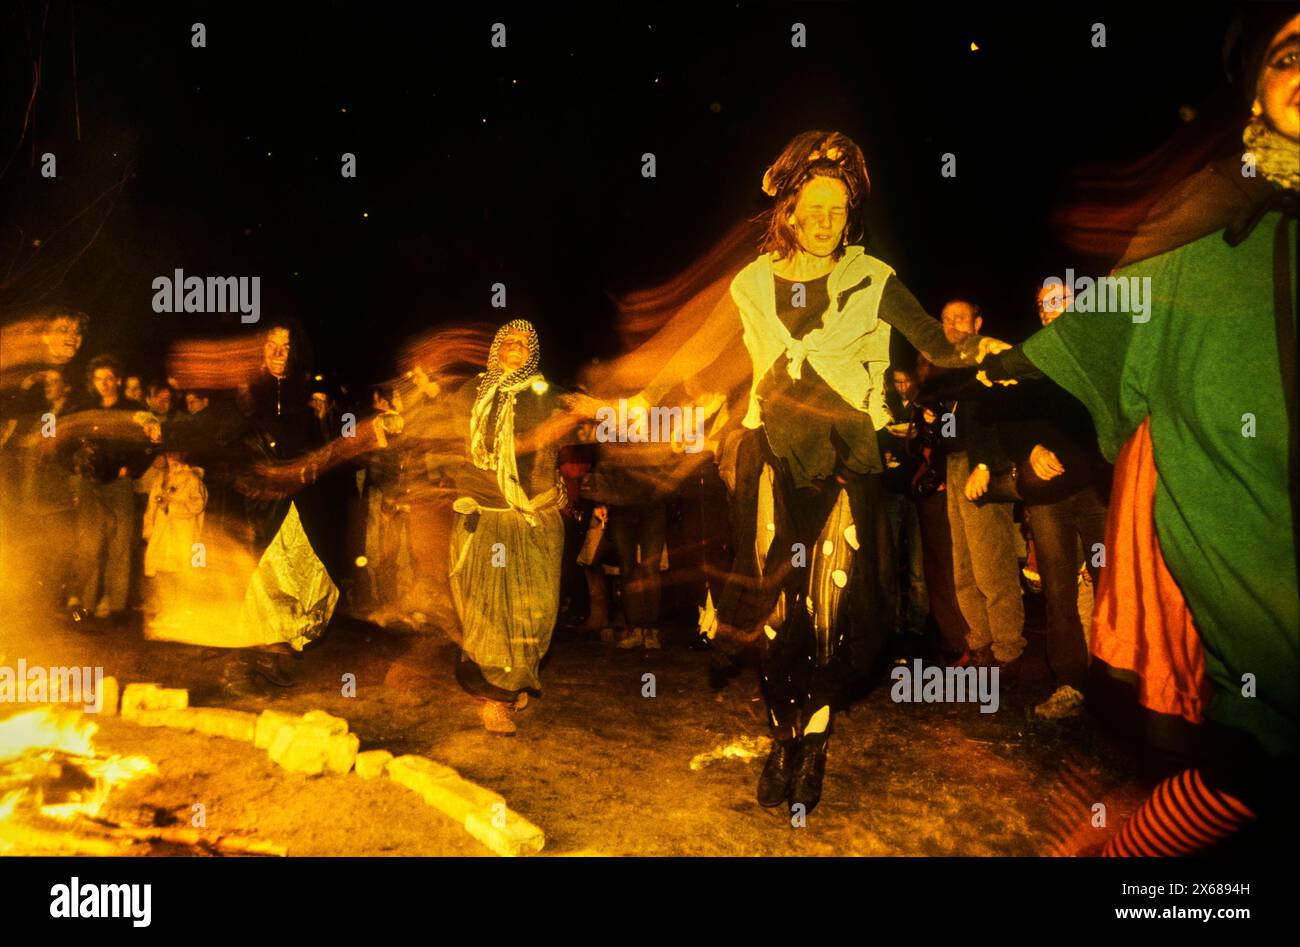 Walpurgis Deutschland, Berlin, 30.4.1991, Hexentanz an der Kollwitzstraße, zur Walpurgisnacht, Â *** Walpurgis Germany, Berlin, 30 4 1991, witches dance on Kollwitzstraße, on Walpurgis Night, Â Stock Photo